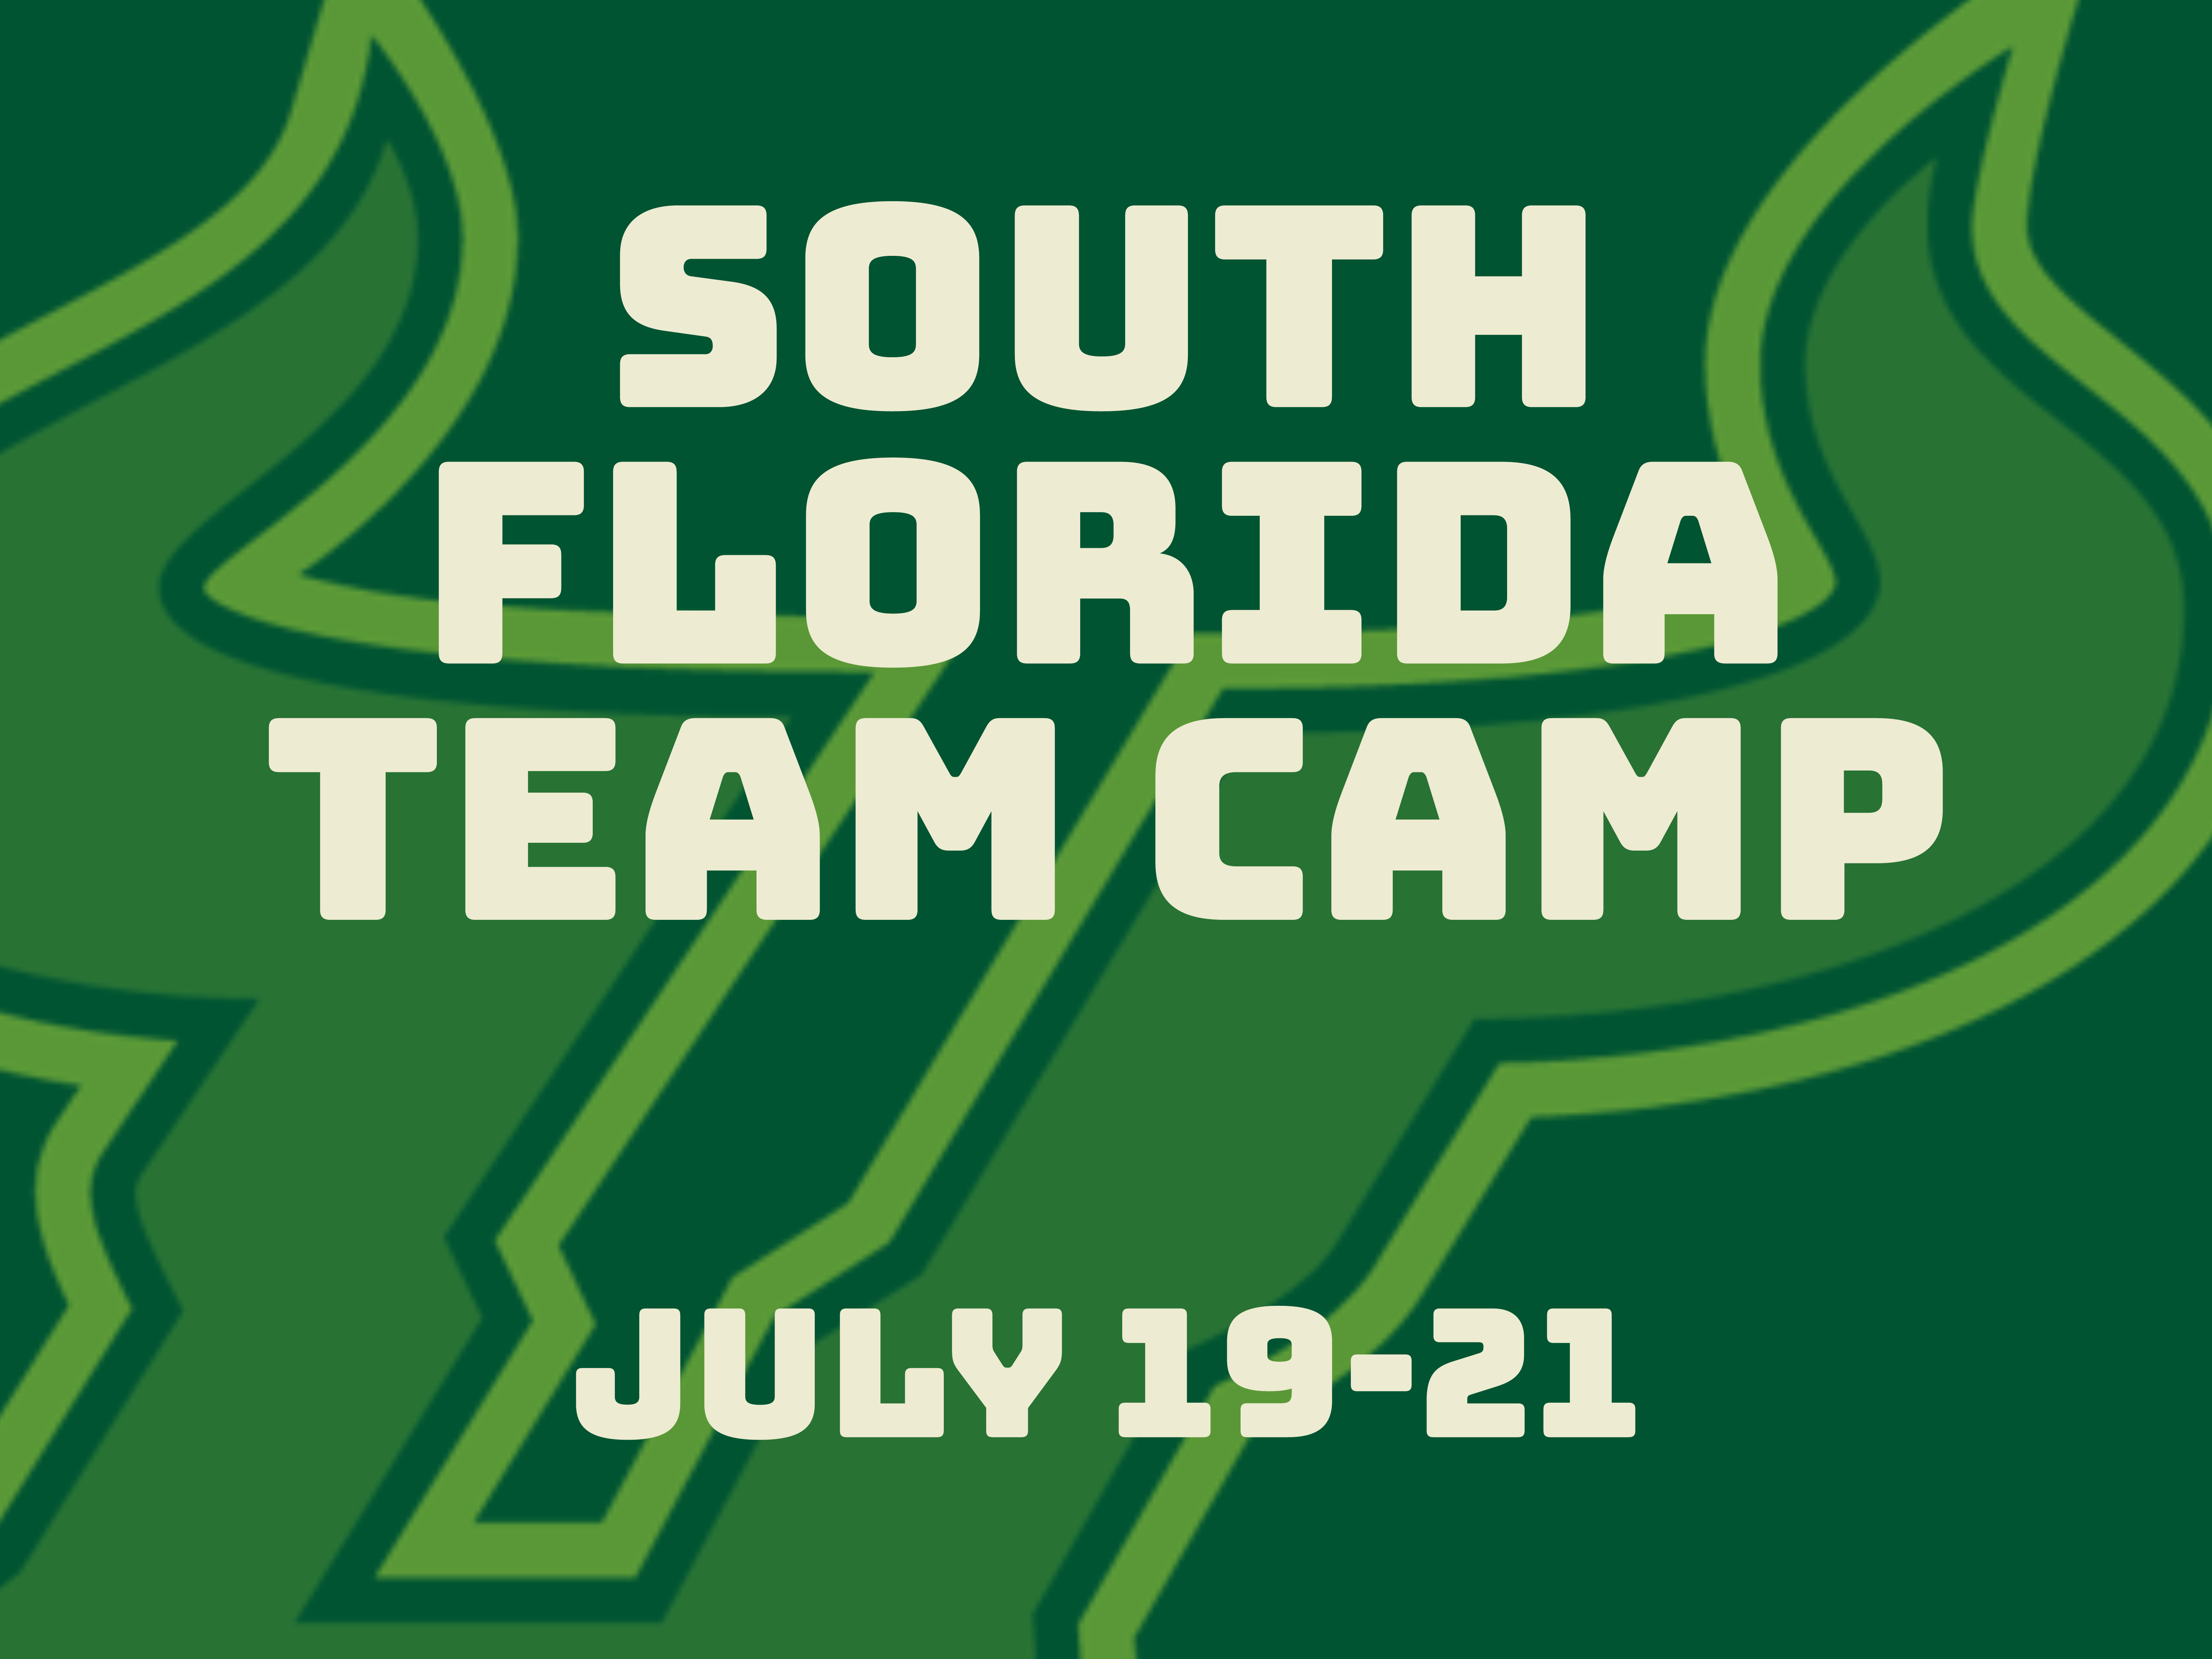 South Florida Team Camp - Leto event image